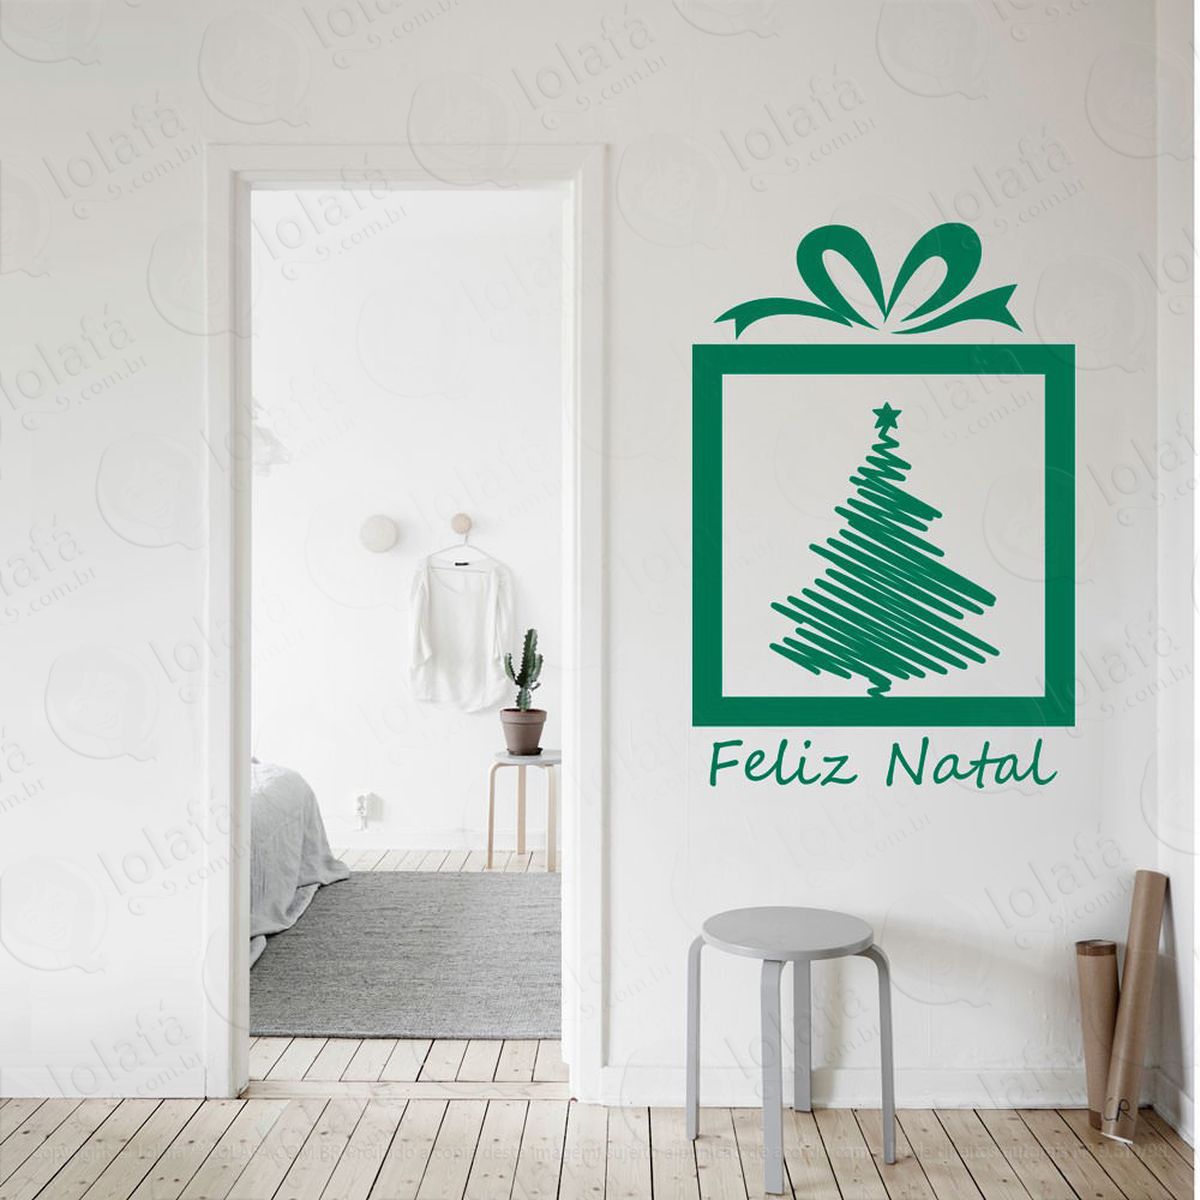 presente e Árvore adesivo de natal para vitrine, parede, porta de vidro - decoração natalina mod:339